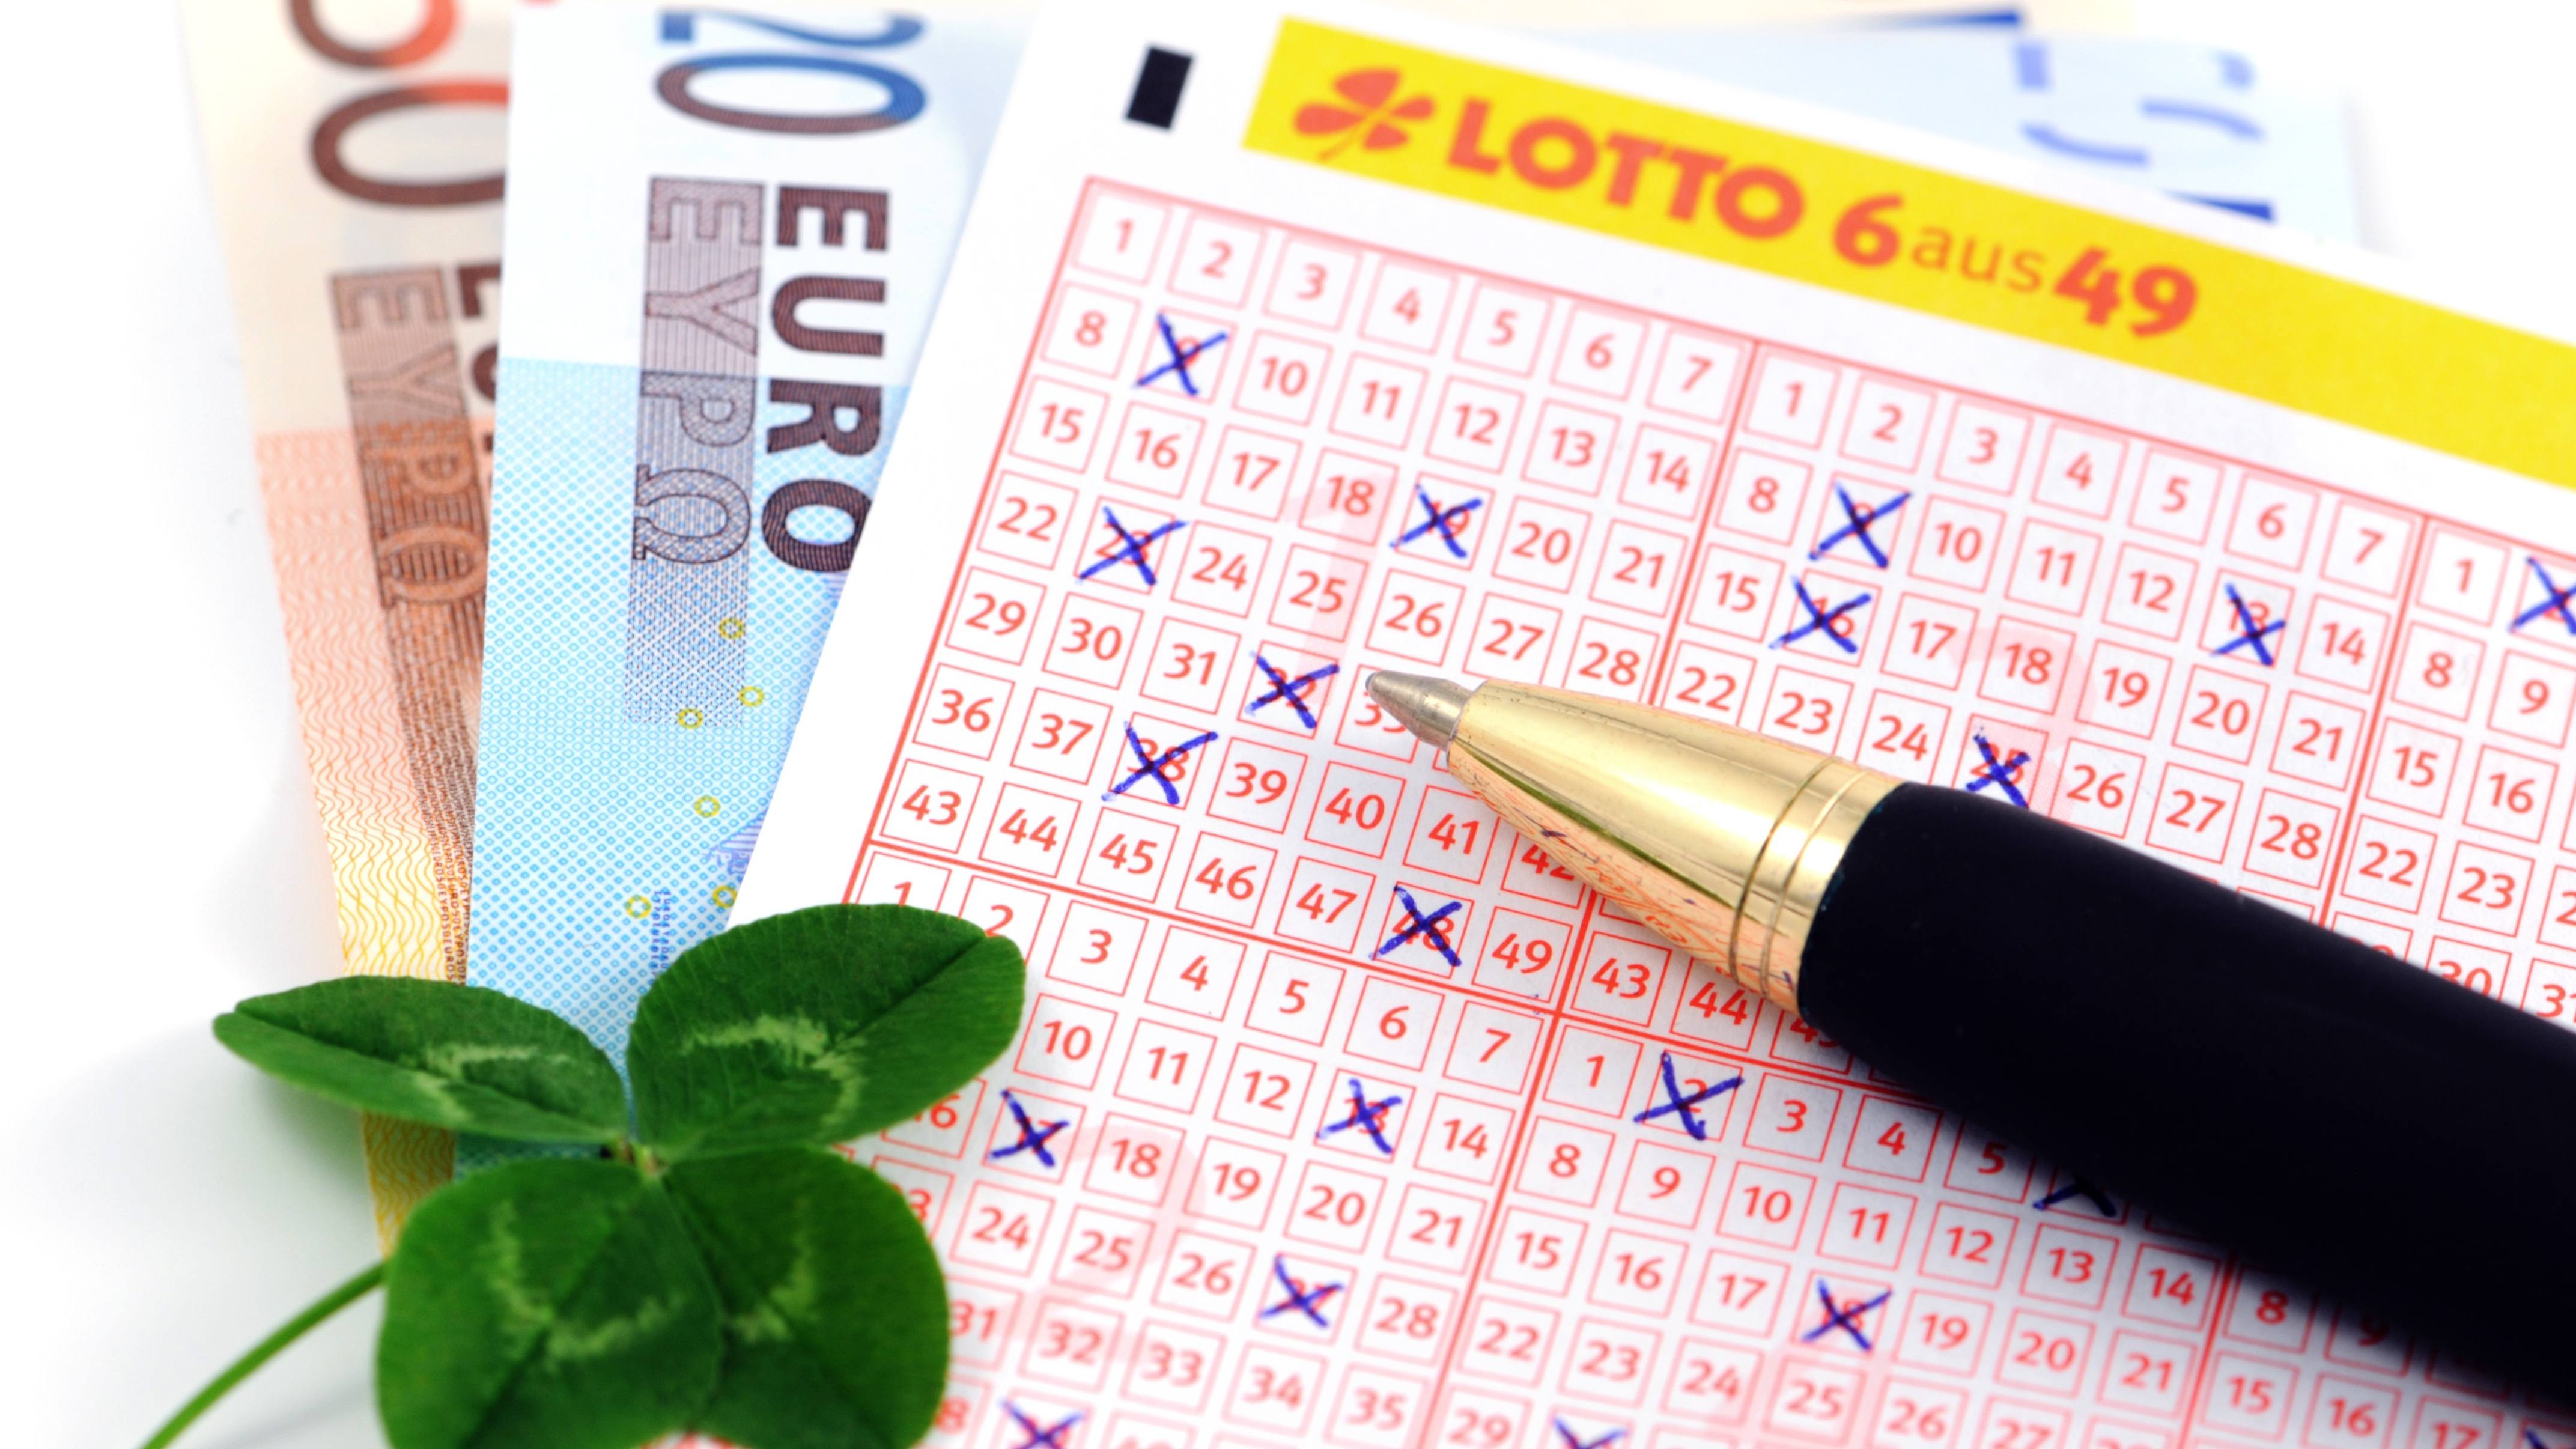 Lottoschein mit Glückskleeblatt und Euroscheinen